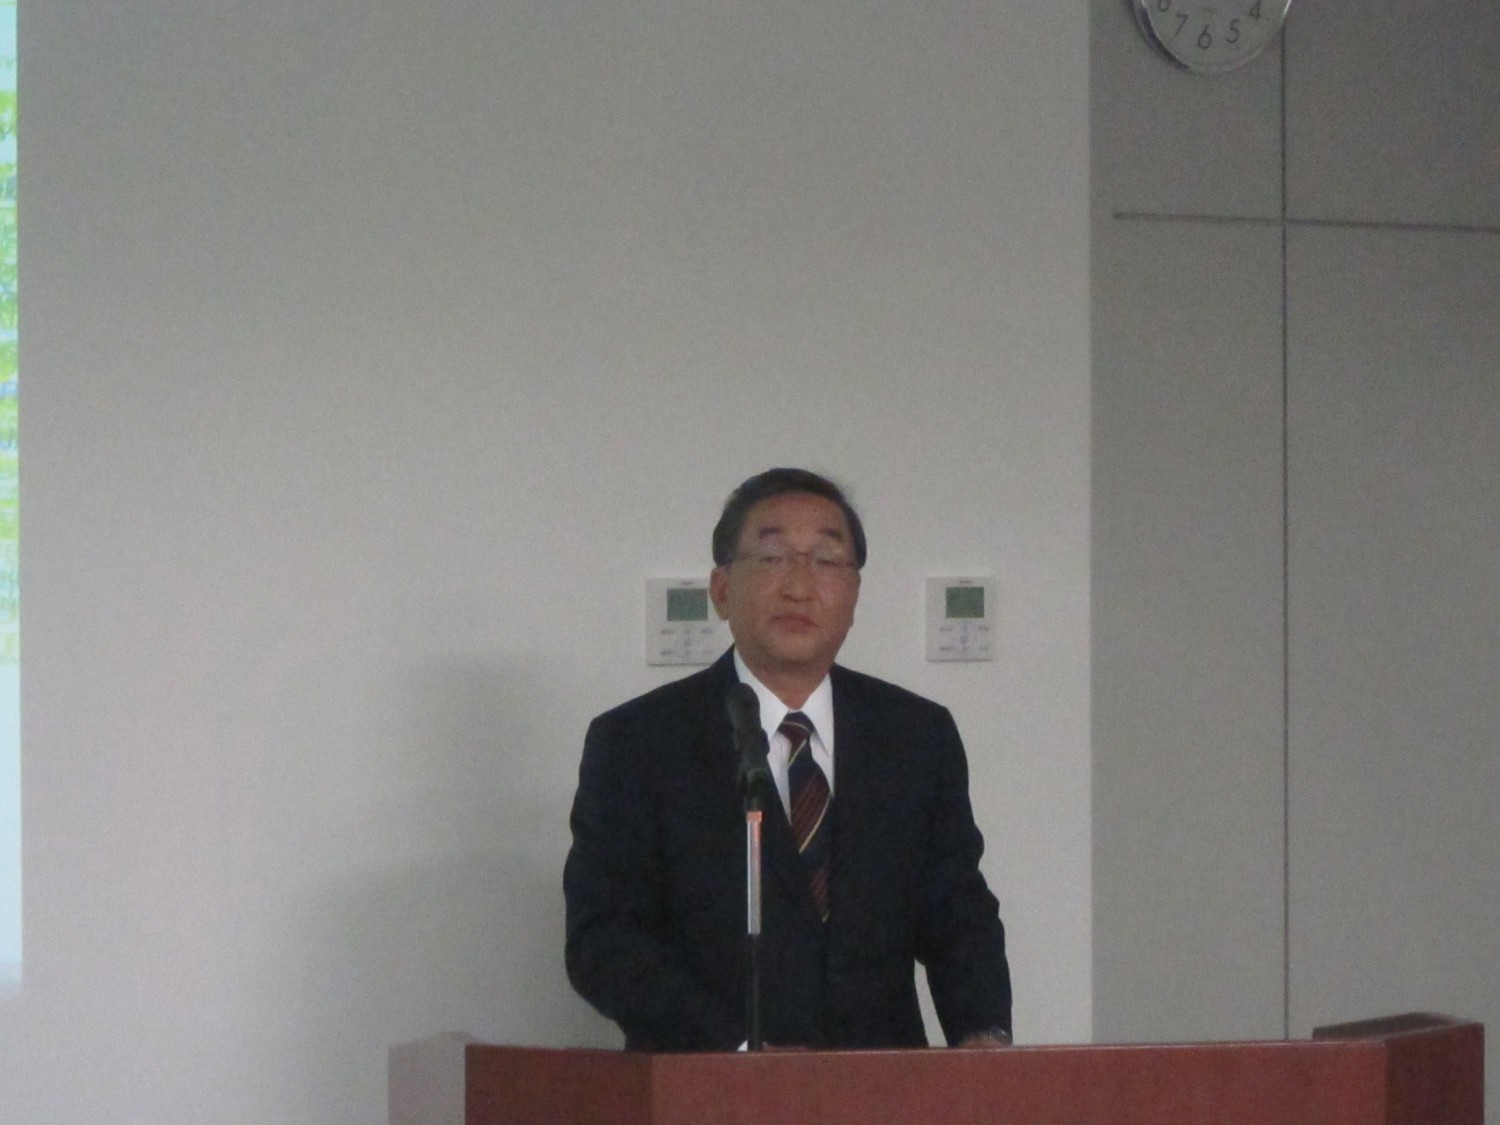 今後の展開について解説する福富秀典取締役常務執行役員日本ビジネスユニット長